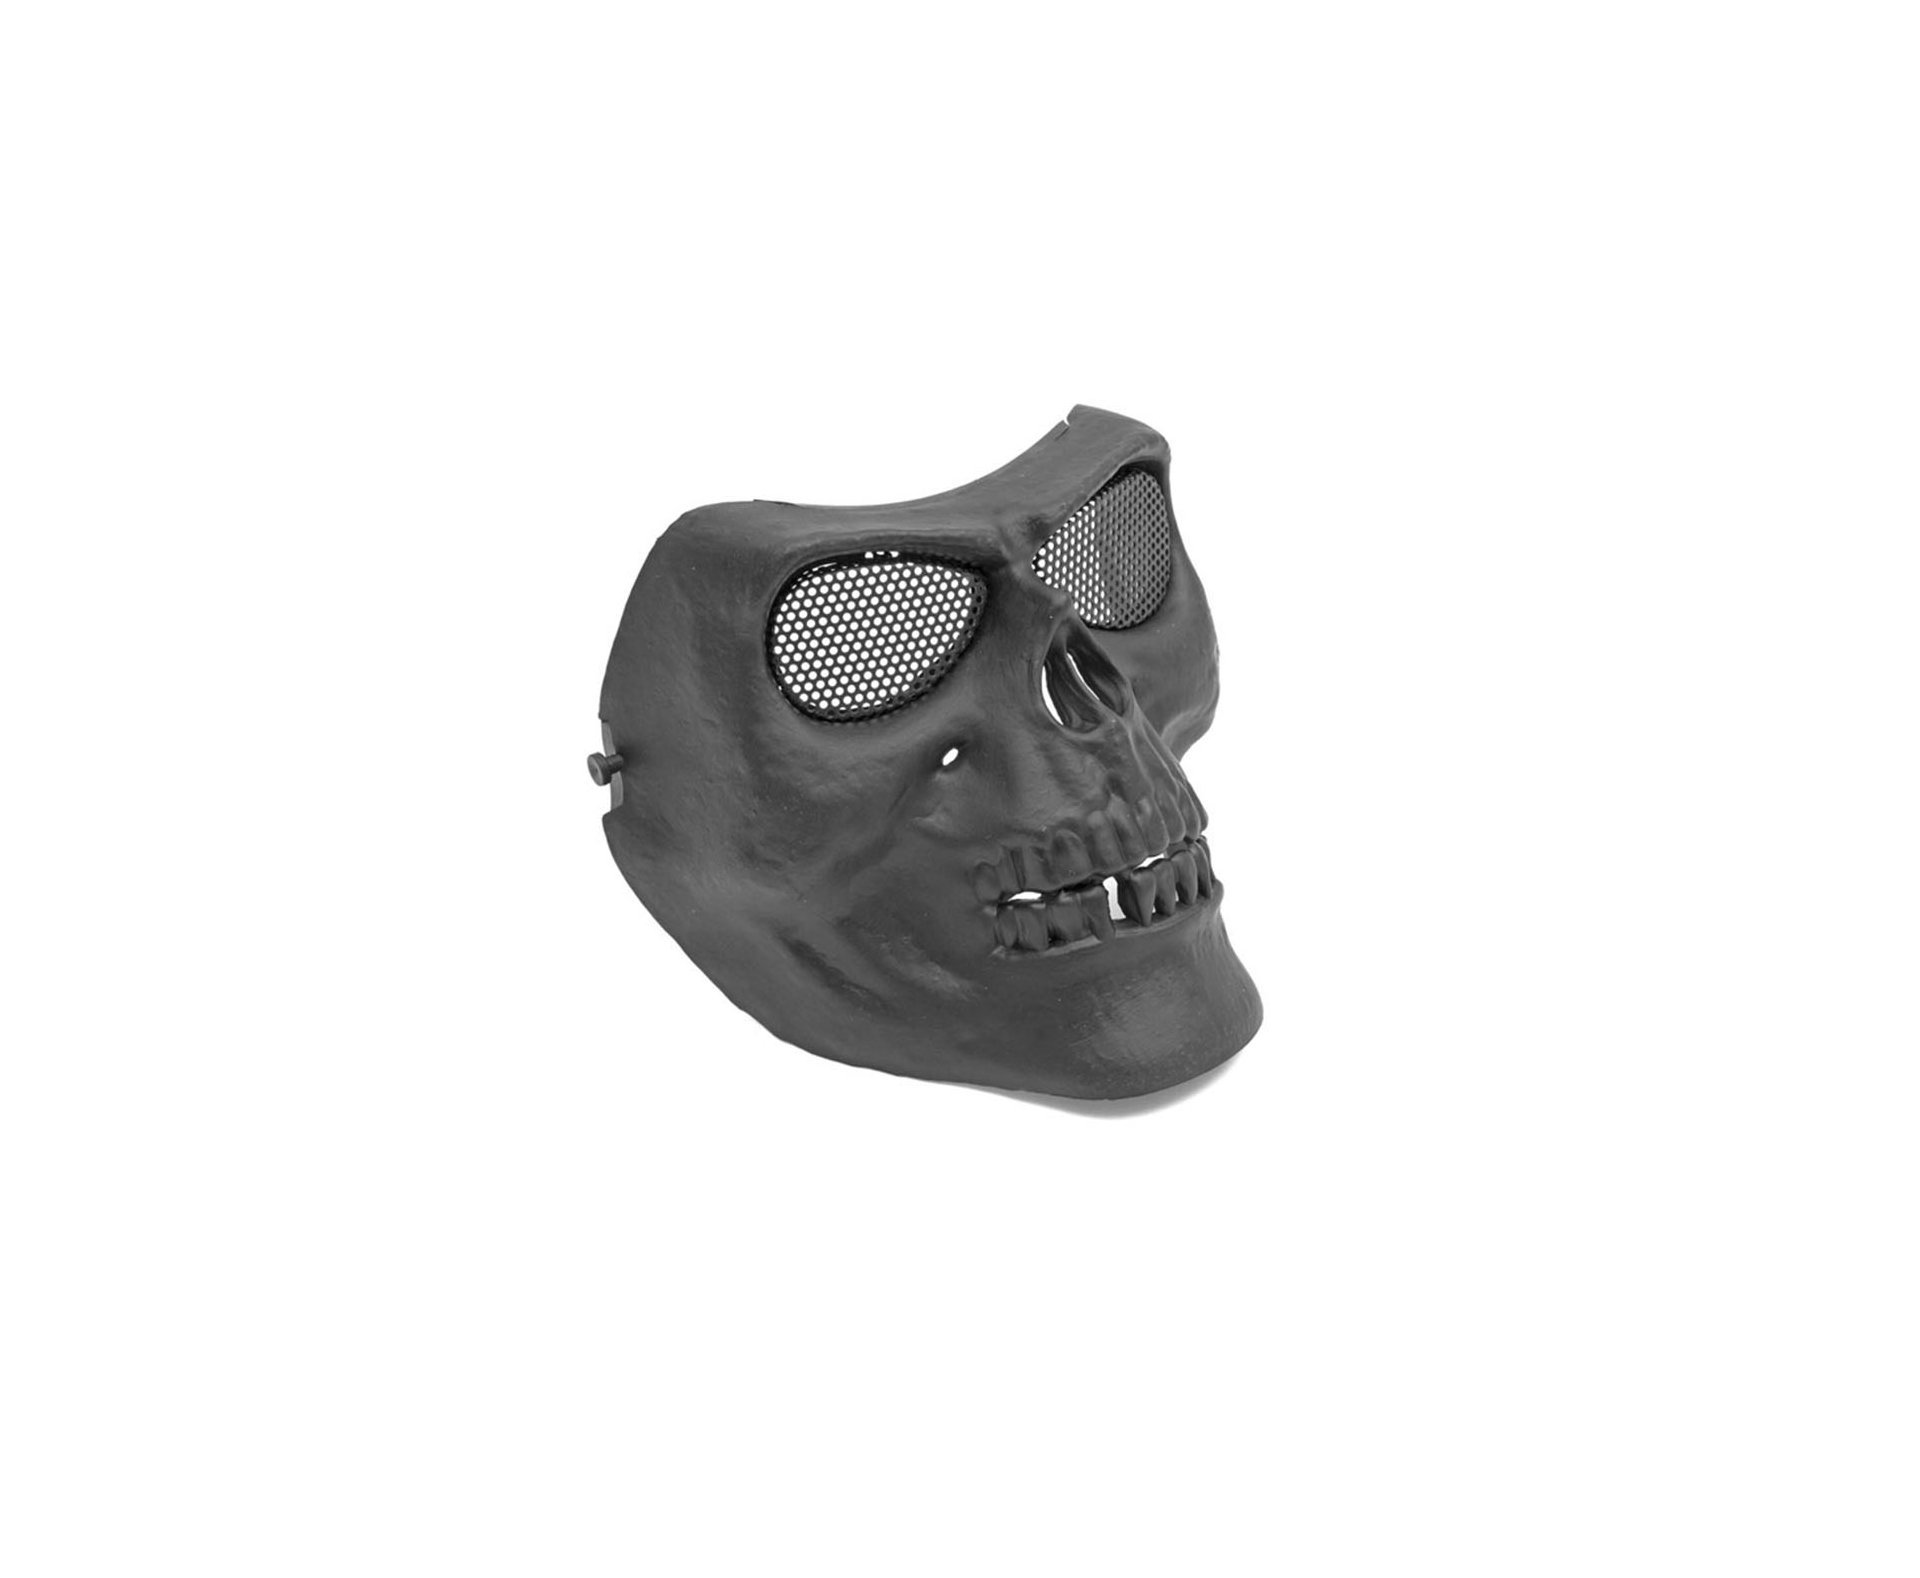 Mascara Tatica De Caveira Em Abs C/proteção De Tela Em Metal - Preta